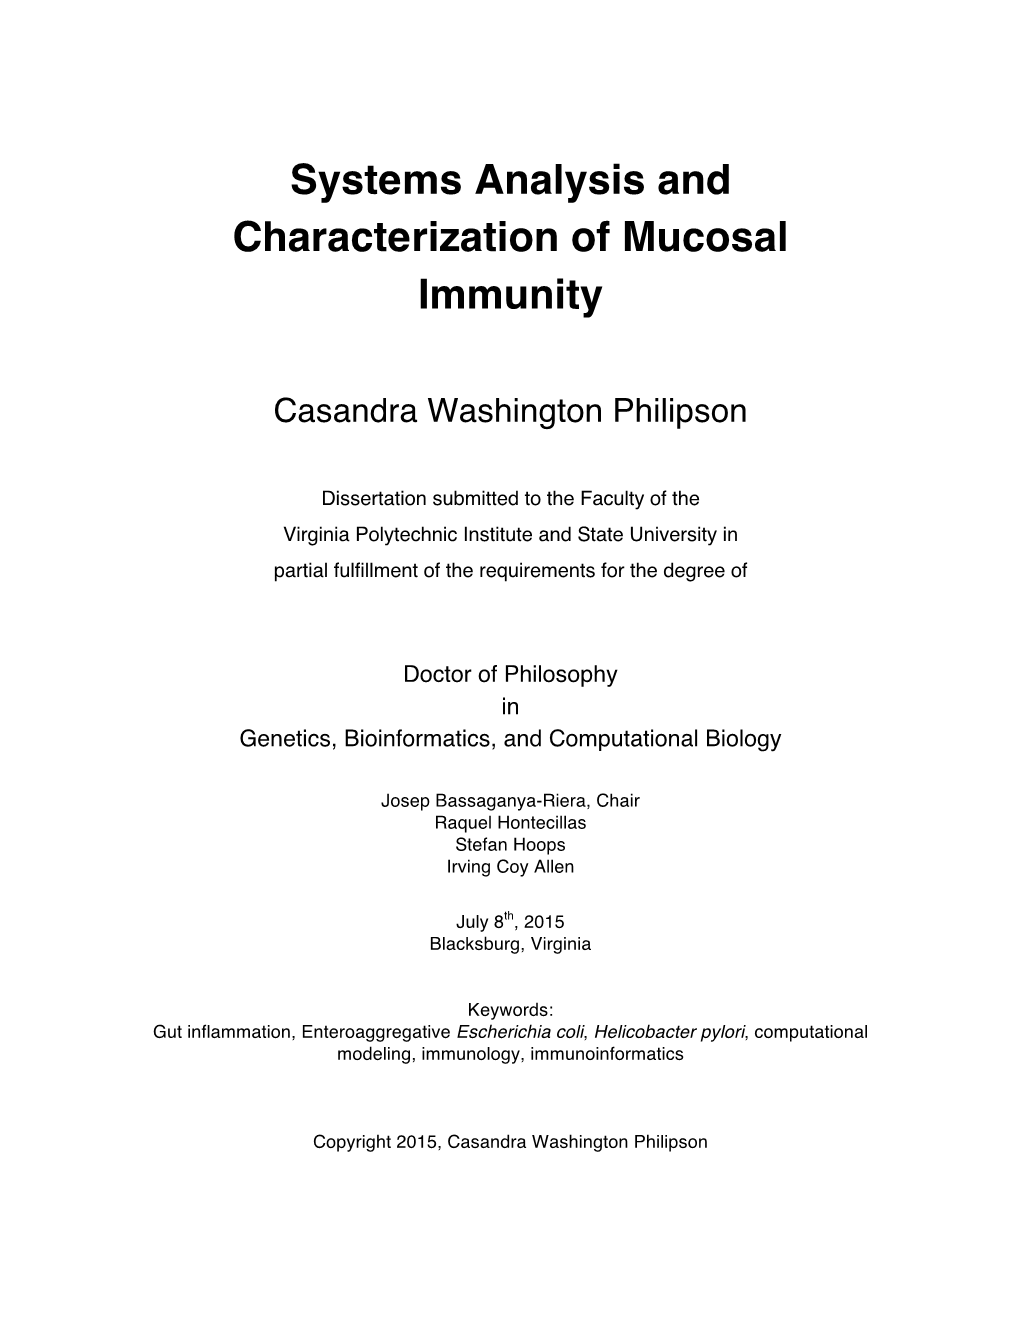 Systems Analysis and Characterization of Mucosal Immunity